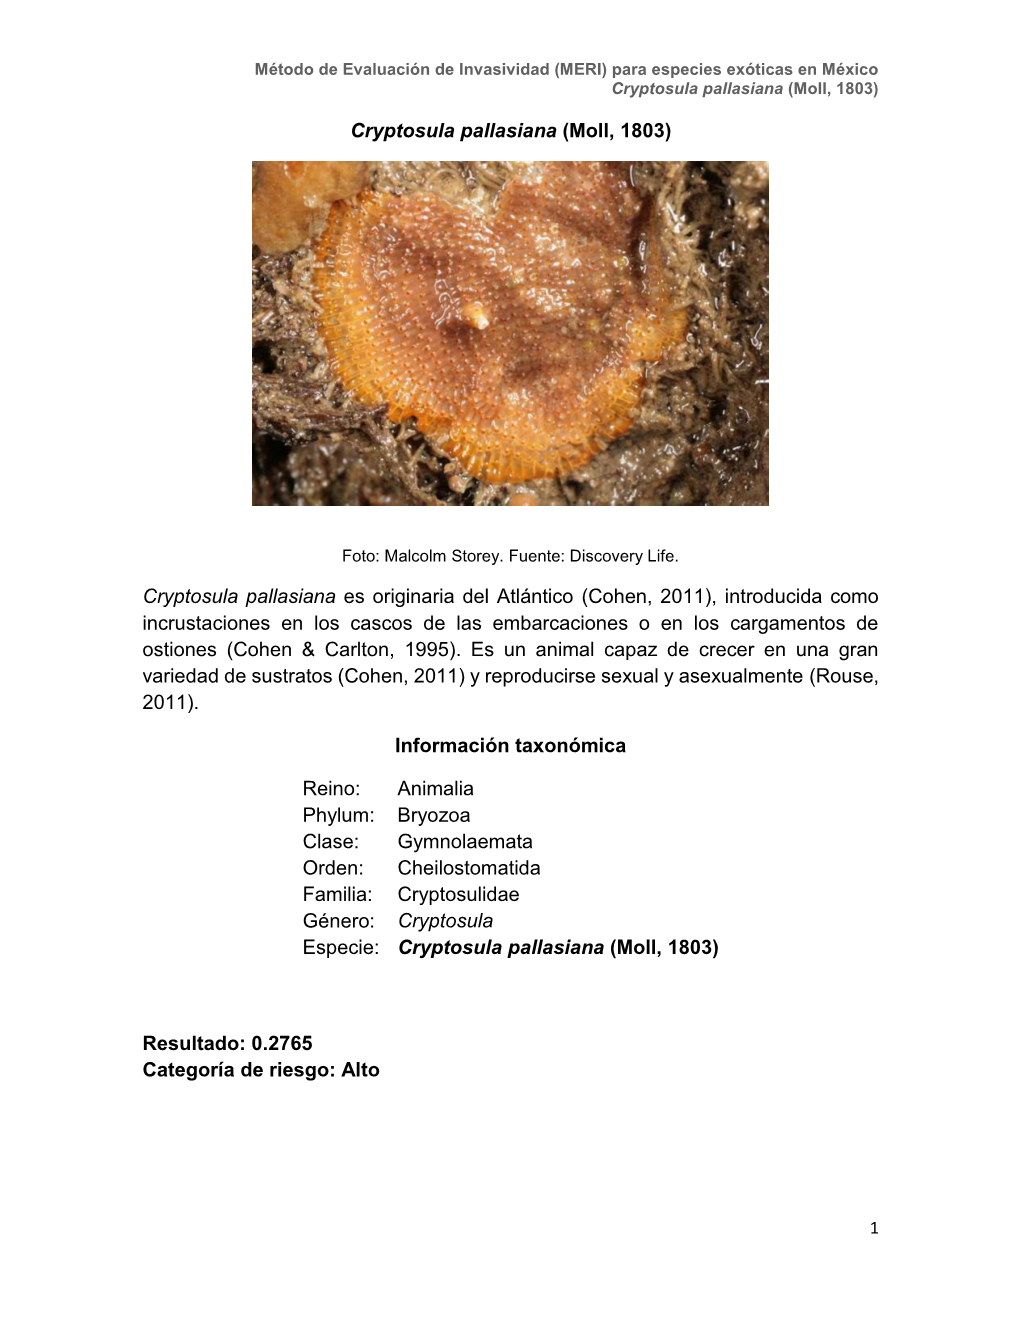 Moll, 1803) Cryptosula Pallasiana Es Originaria Del Atlántico (Cohen, 2011